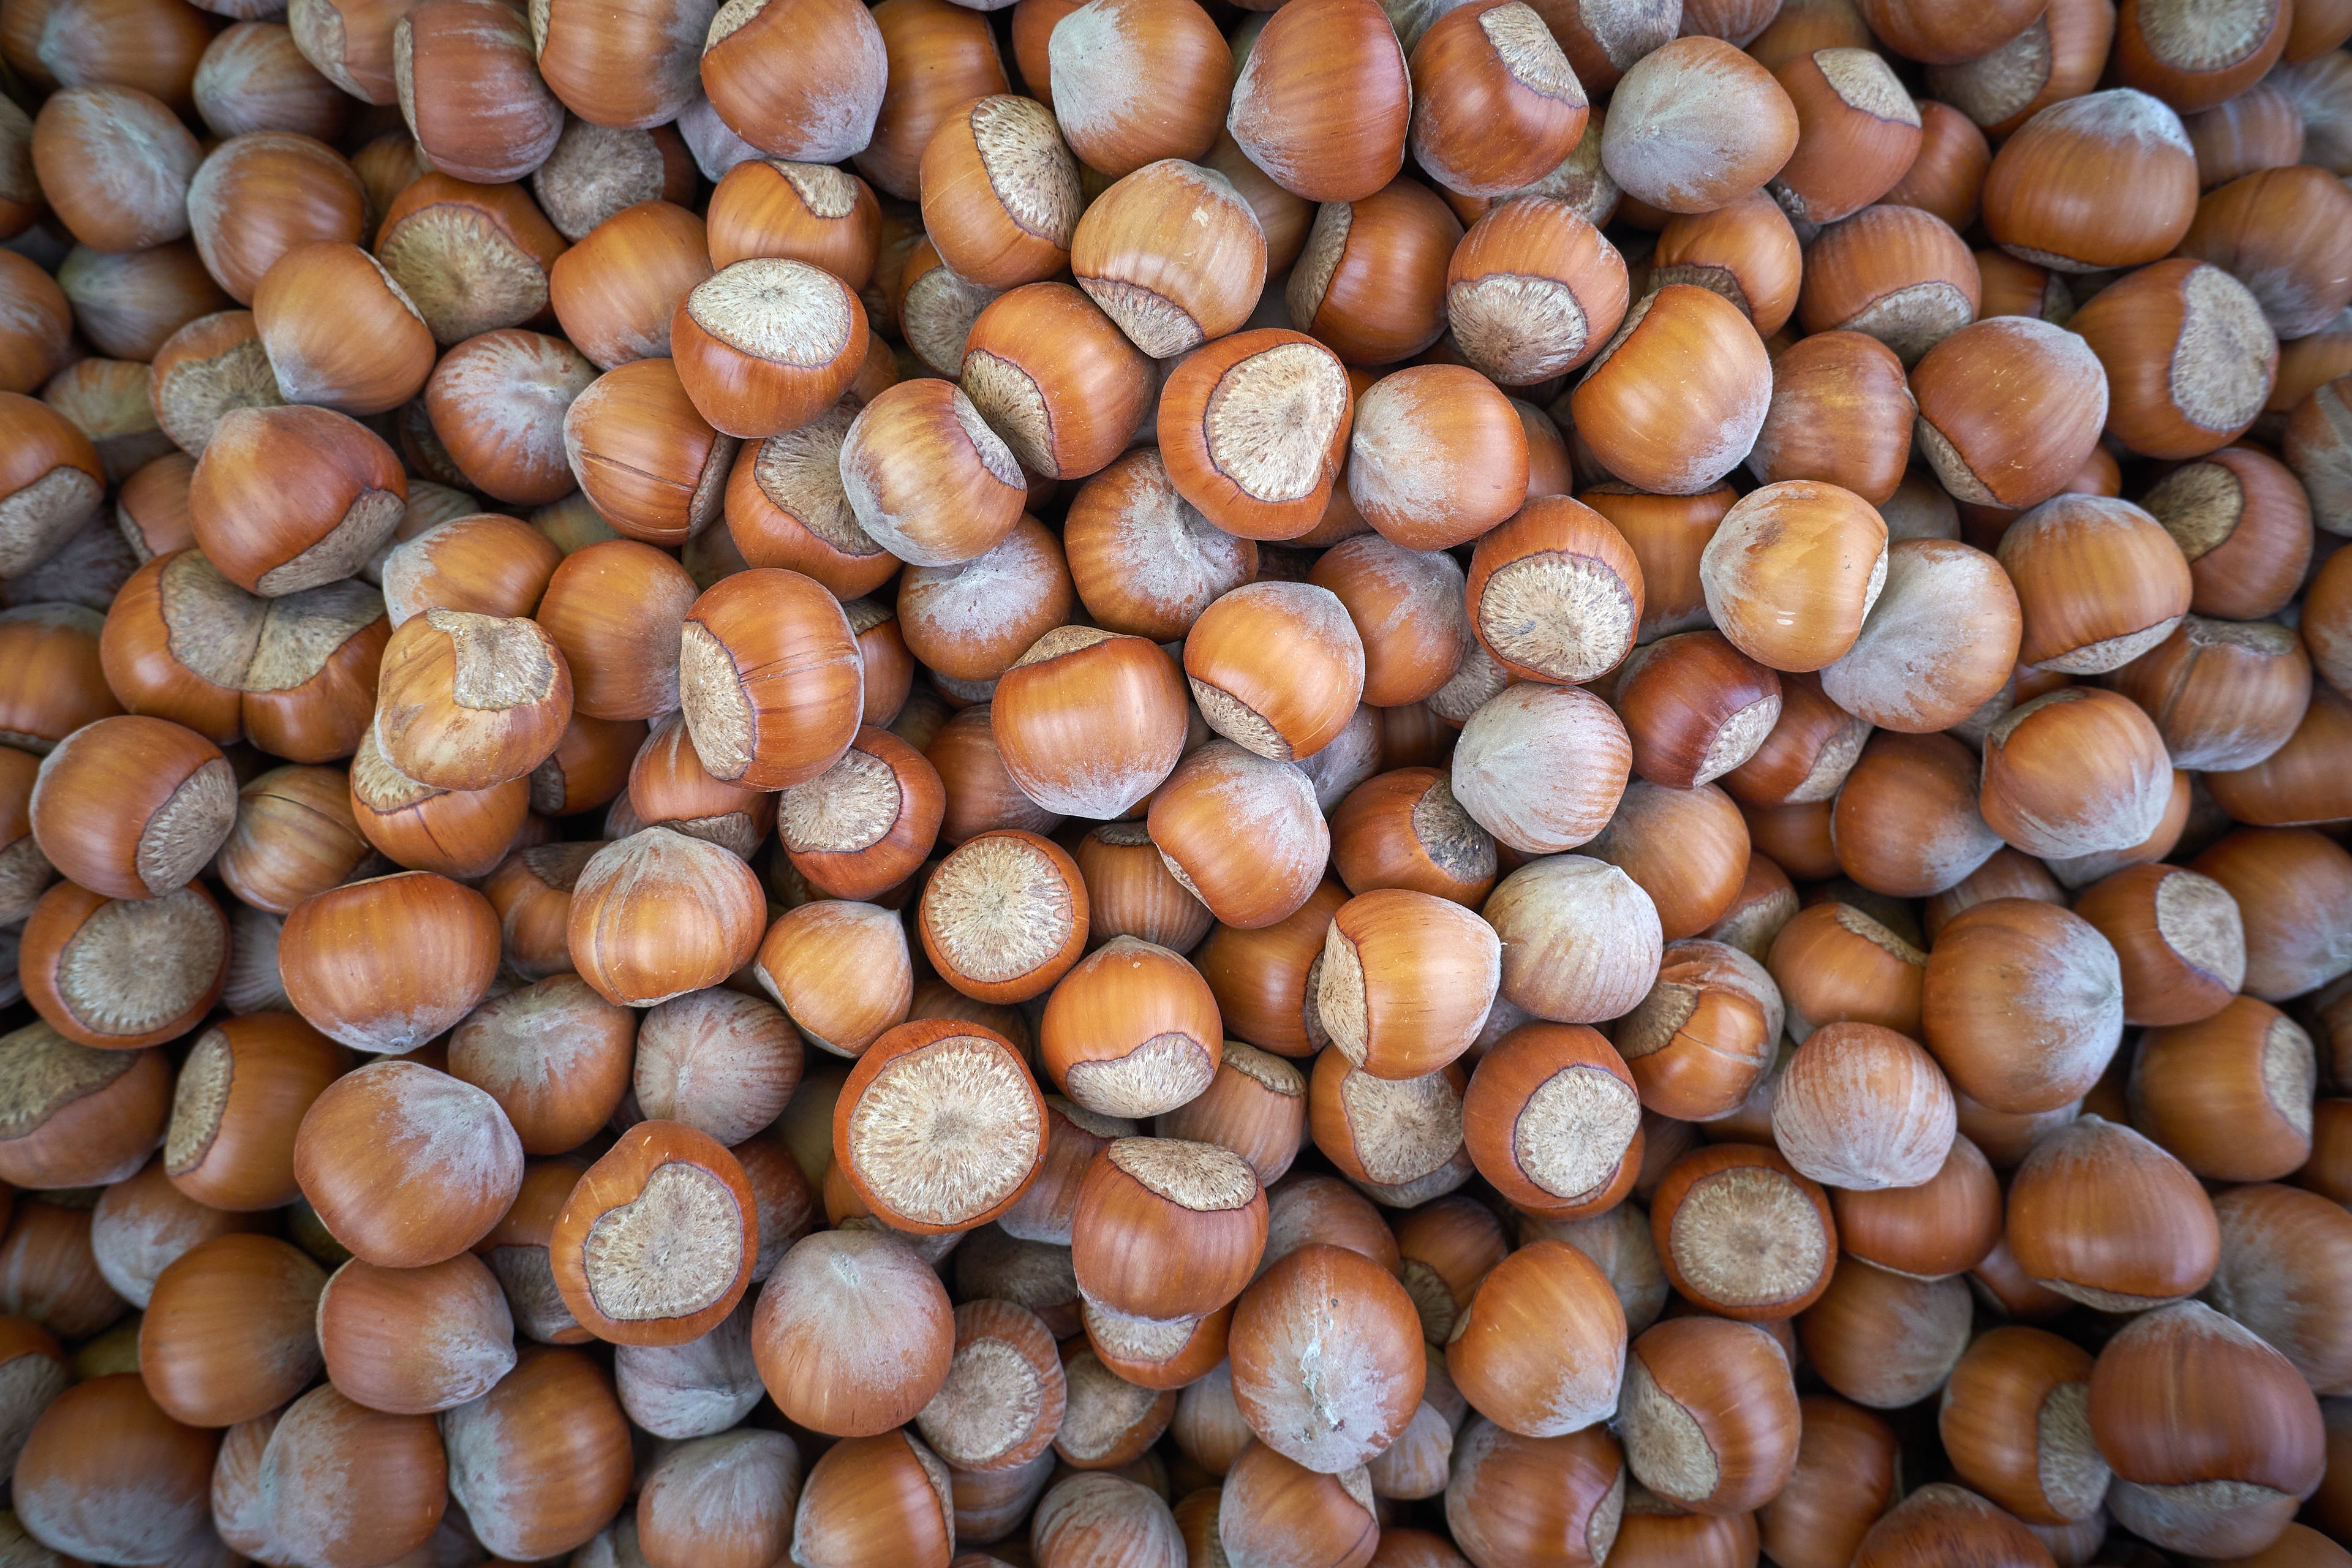 Italian Hazelnut in shell background